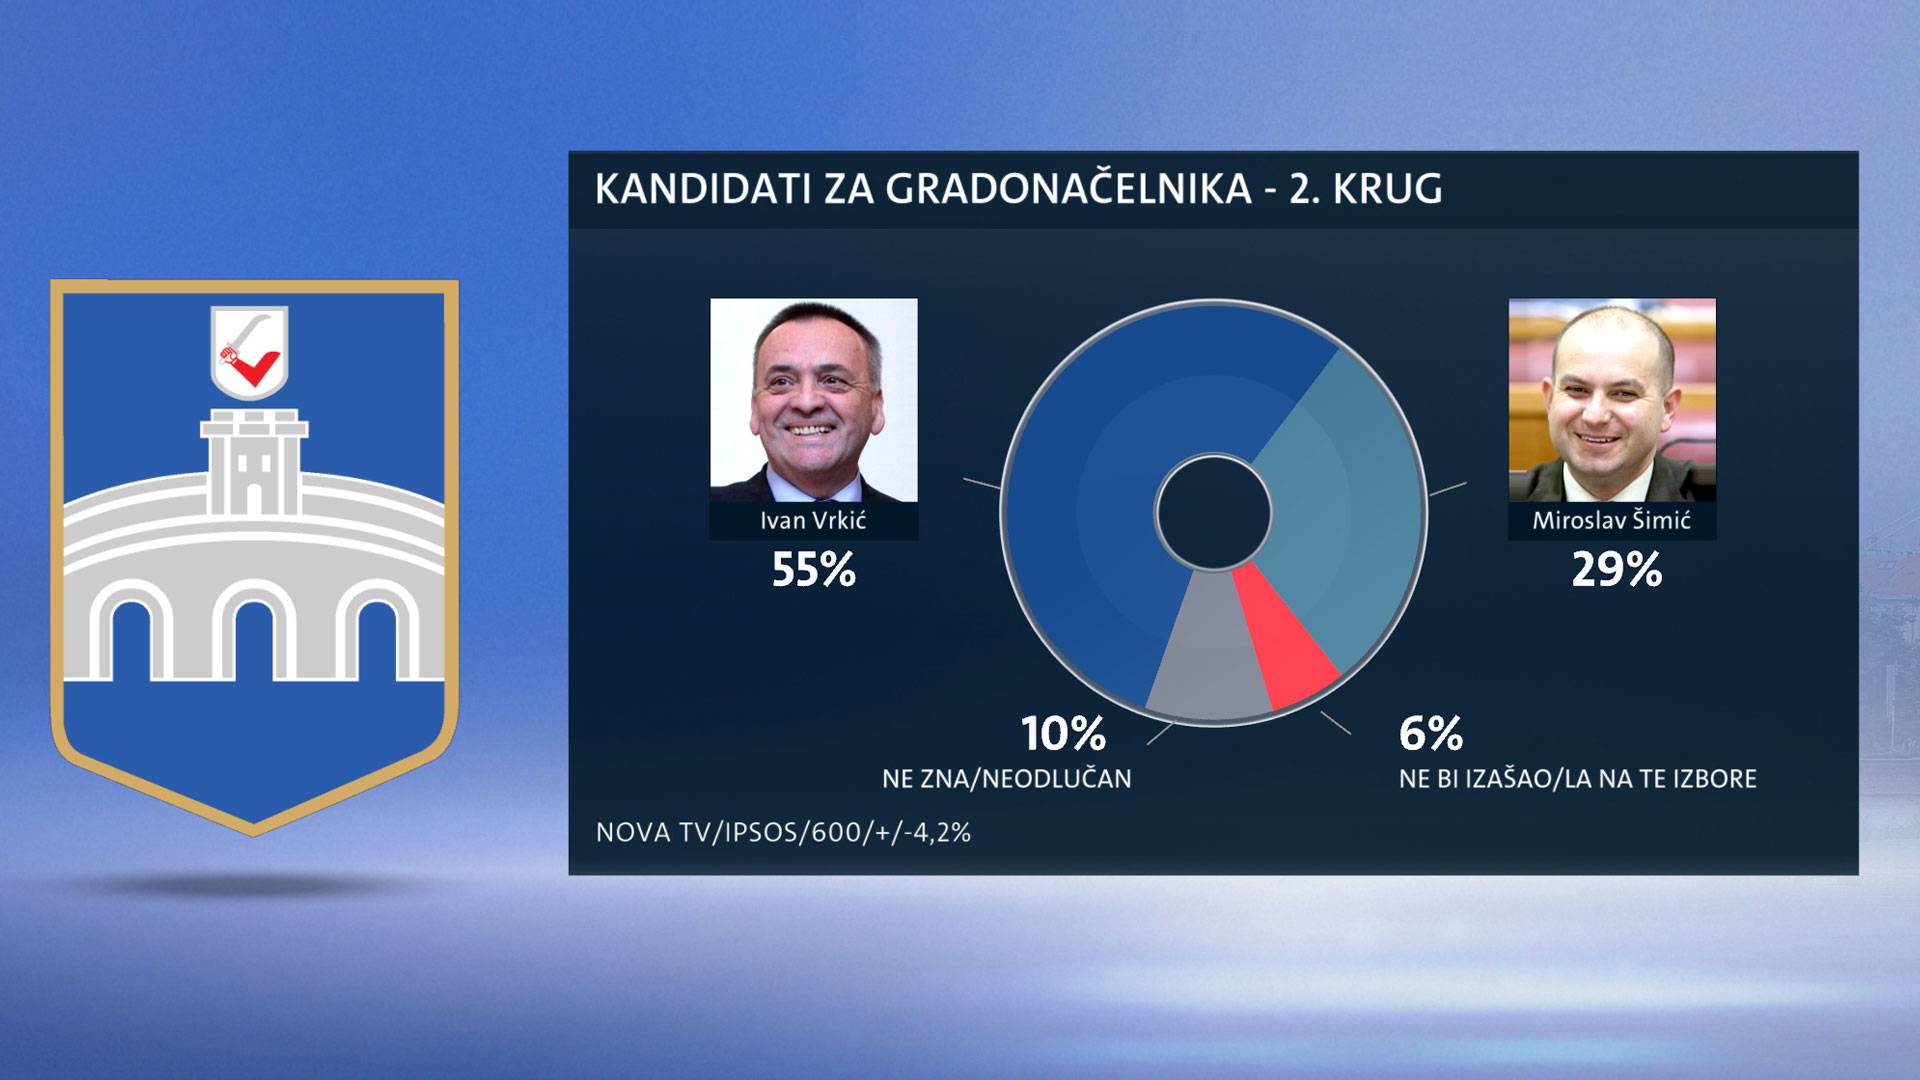 Istraživanje: Ivica Vrkić favorit za osječkog gradonačelnika